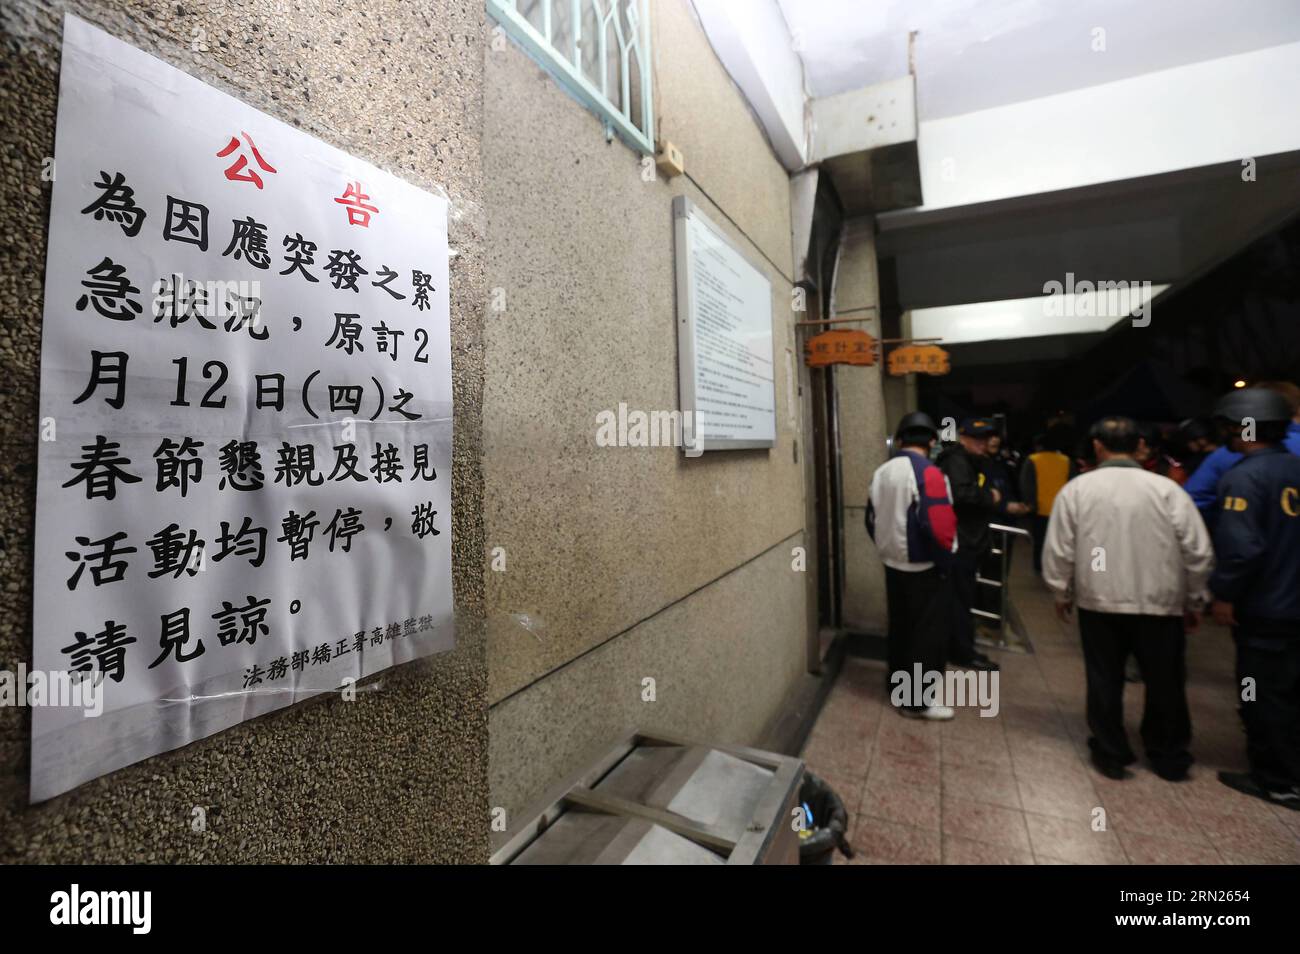 (150212) -- KAOHSIUNG, 12 febbraio 2015 -- Un avviso di sospensione temporanea della riunione familiare è stato visto nella prigione di Kaohsiung a Kaohsiung, Taiwan, nel sud-est della Cina, 12 febbraio 2015. Sei detenuti con fucili e pistole che hanno preso ostaggi nella prigione di Kaohsiung si sono uccisi giovedì mattina presto, terminando quasi 14 ore di stallo con la polizia. I due ostaggi, tra cui il direttore della prigione Chen Shih-chih e la guardia capo Wang Shih-tsang, erano entrambi al sicuro, hanno detto i funzionari. (wyo) CHINA-TAIWAN-KAOHSIUNG-OSTAGGIO (CN) photomall PUBLICATIONxNOTxINxCHN Kaohsiung 12 febbraio 2015 notifica di sospensione temporanea Foto Stock